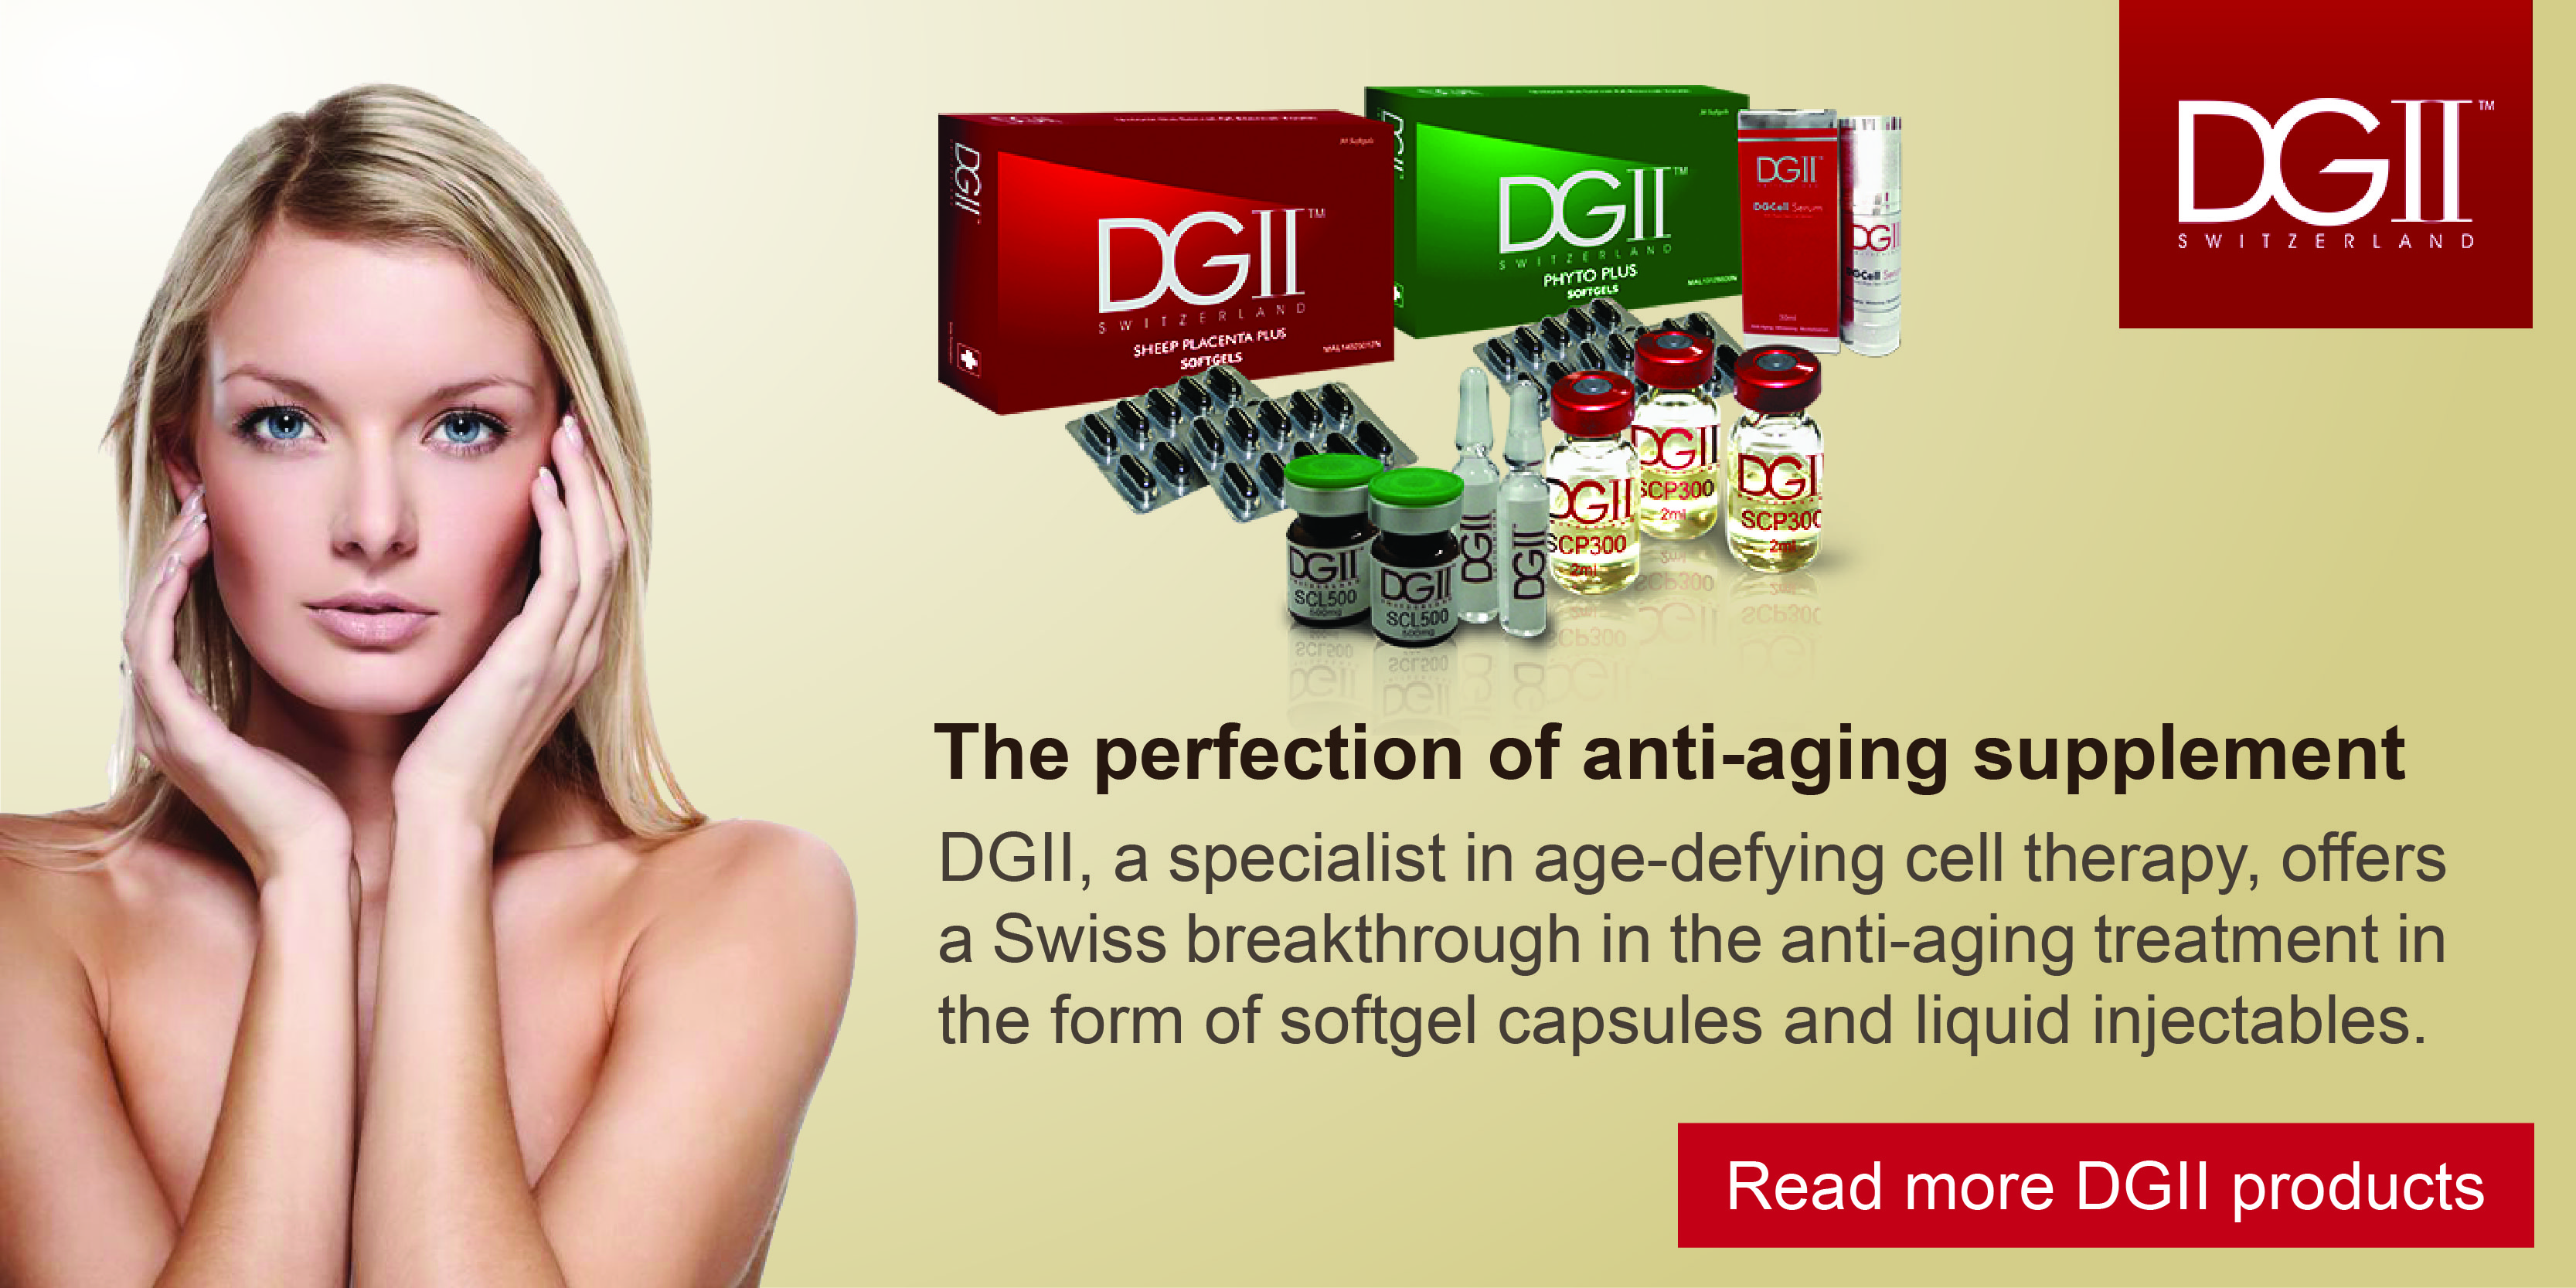 DG2 anti aging